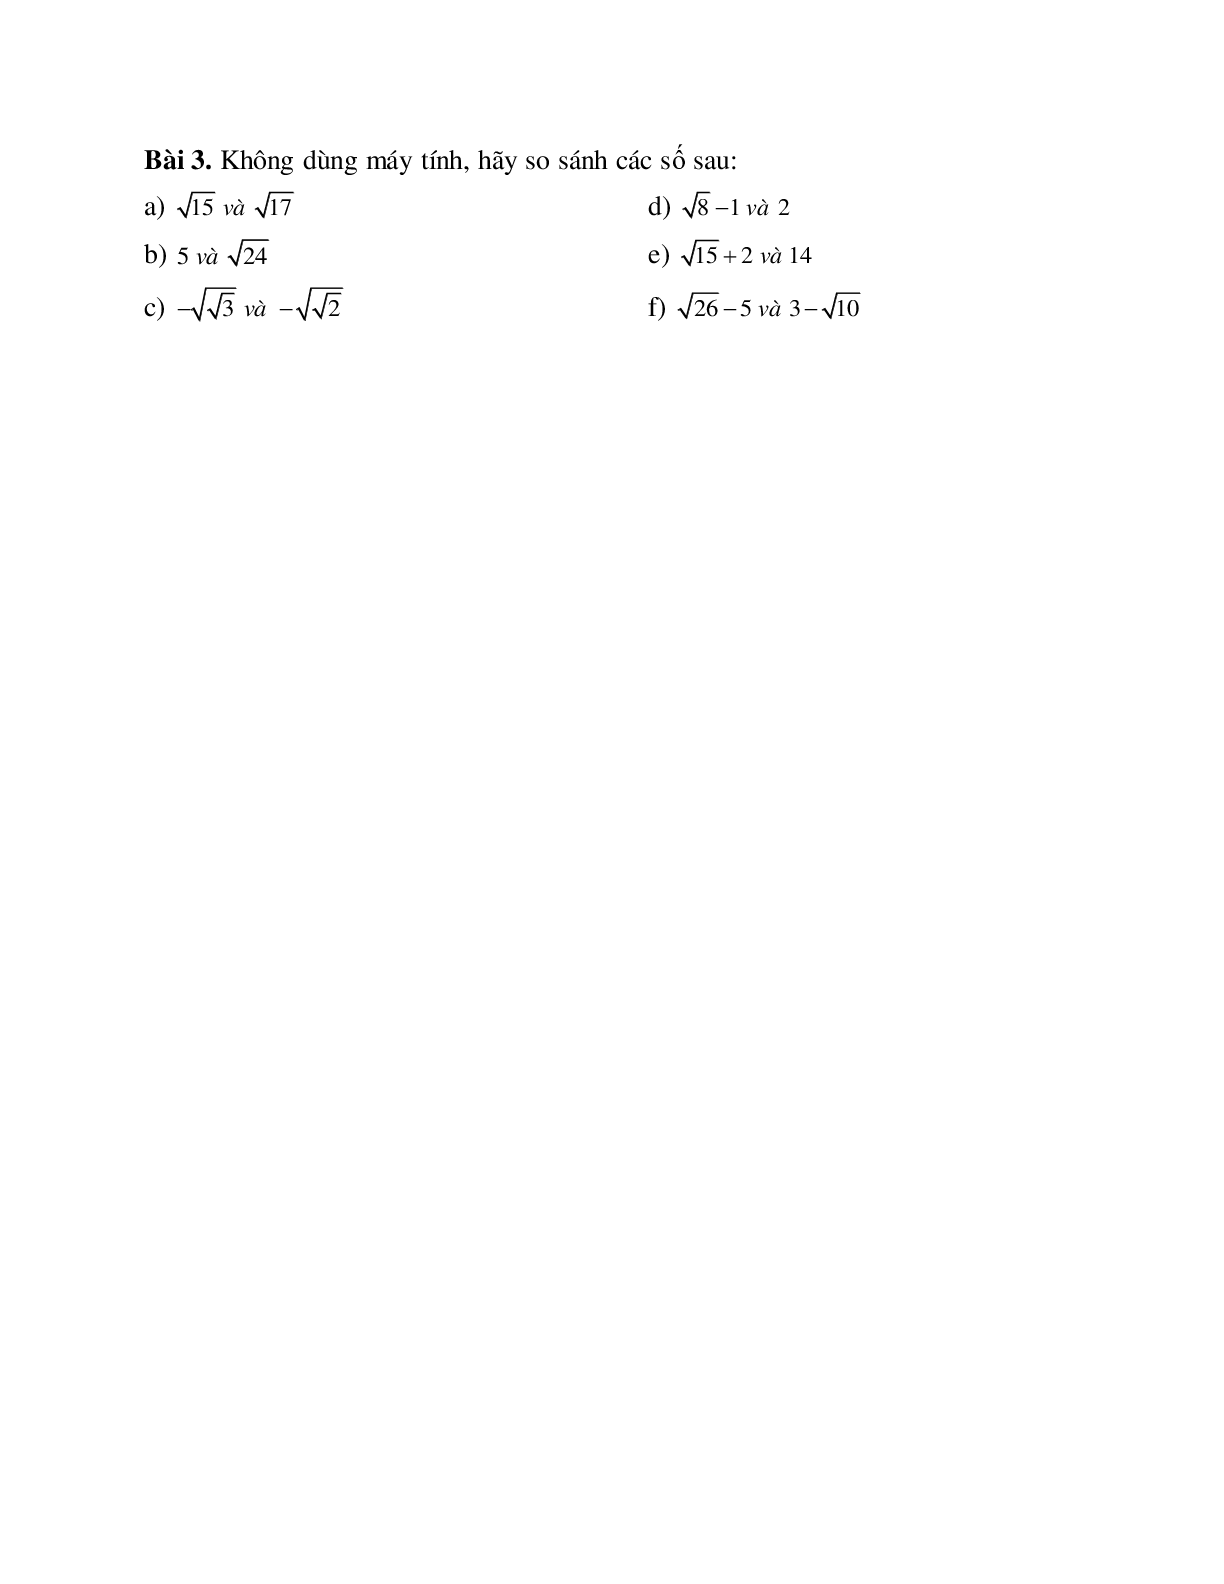 Cách giải So sánh hai căn bậc hai (trang 2)